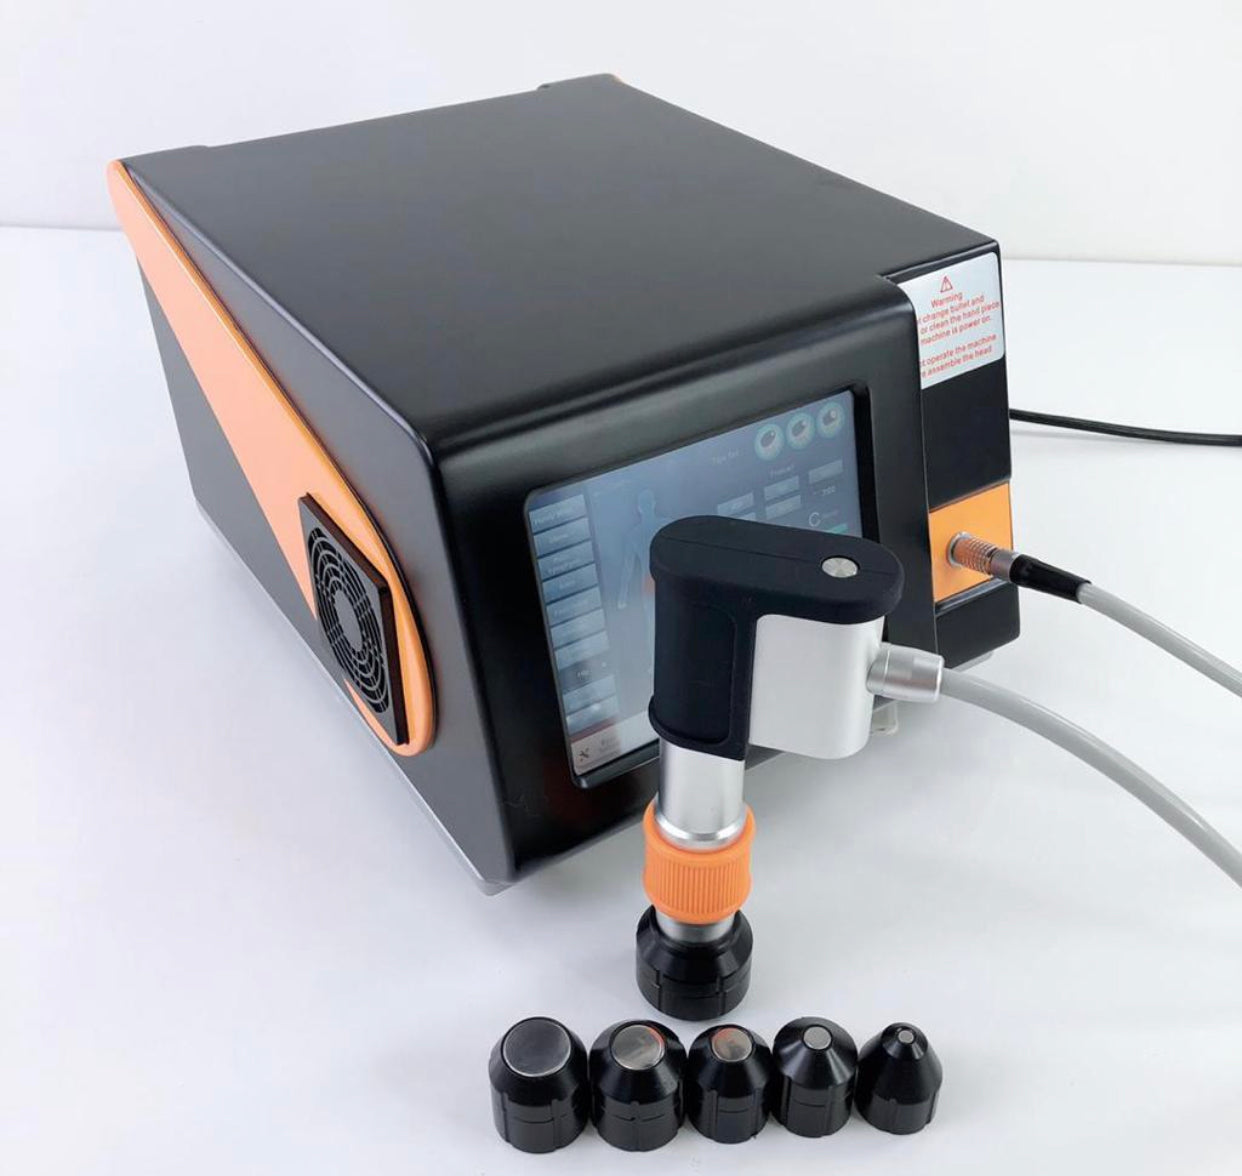 Emslimneorf 7IN1 Focused Shockwave Therapy Machine Multifunctional  Electromagnetic Shockwave Therapy…See more Emslimneorf 7IN1 Focused  Shockwave